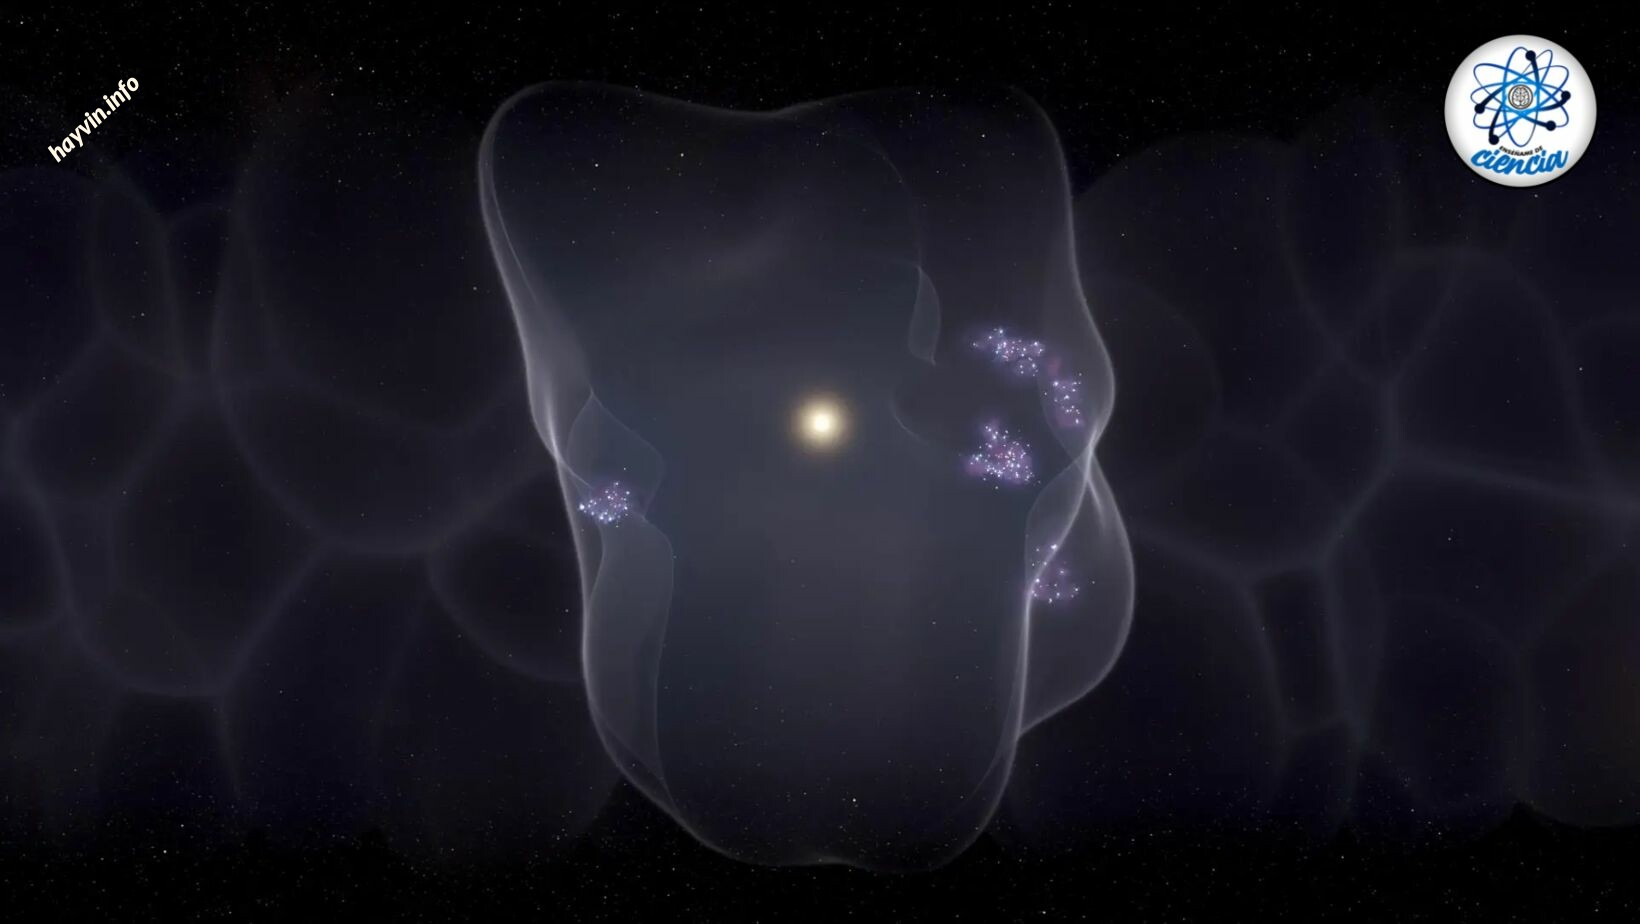 Egy új tanulmány felfedi, hogy egy hatalmas kozmikus buborékban élünk, egy óriási és titokzatos űrben